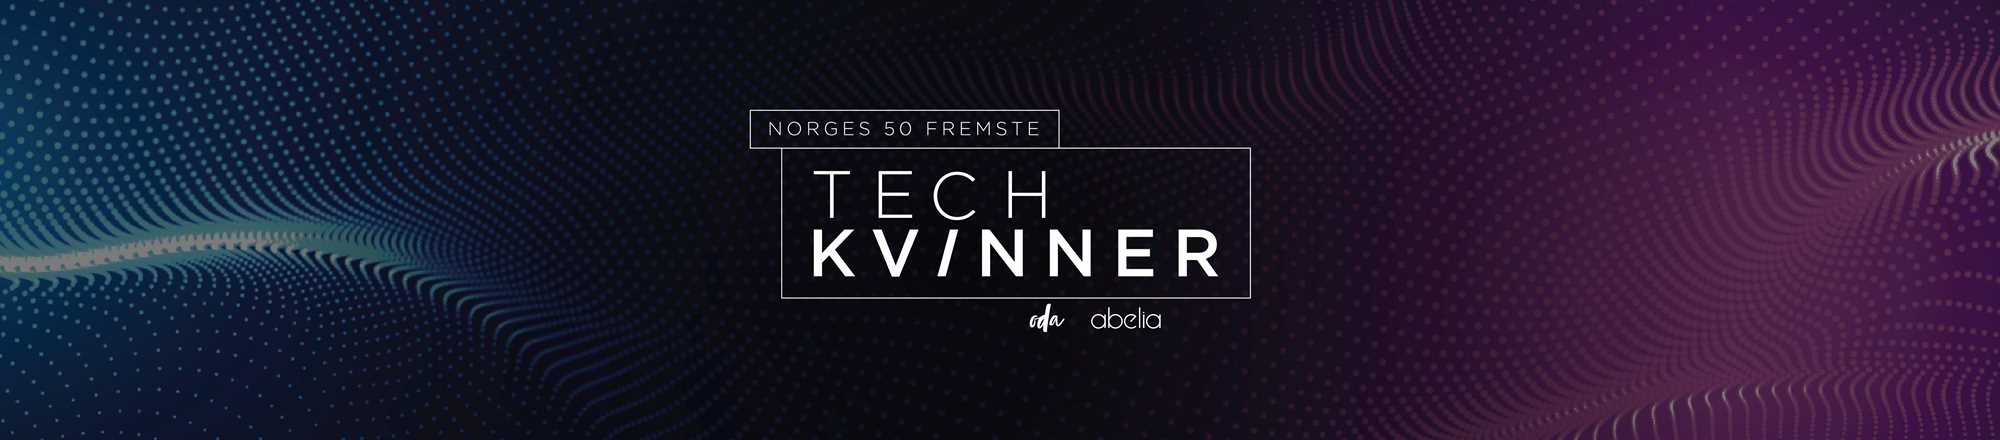 Norges 50 fremste tech-kvinner header